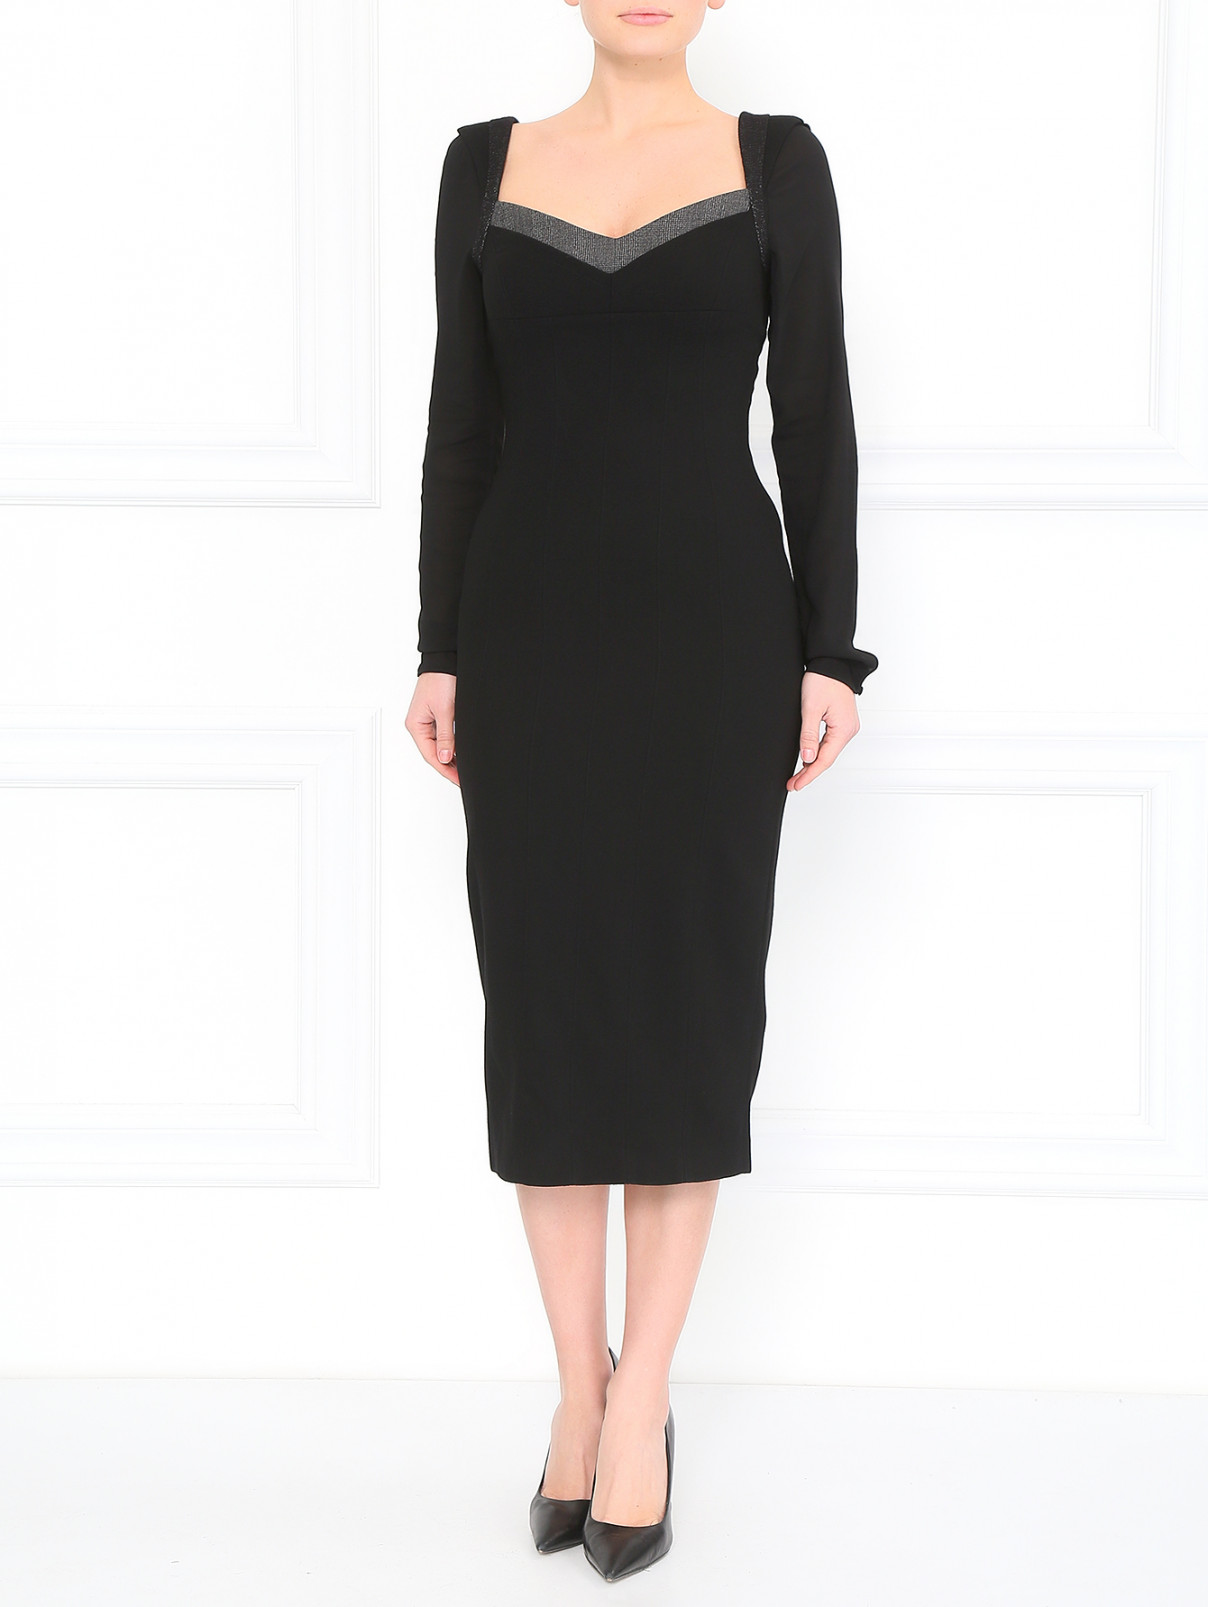 Платье-футляр с рукавами на пуговицах Antonio Marras  –  Модель Общий вид  – Цвет:  Черный